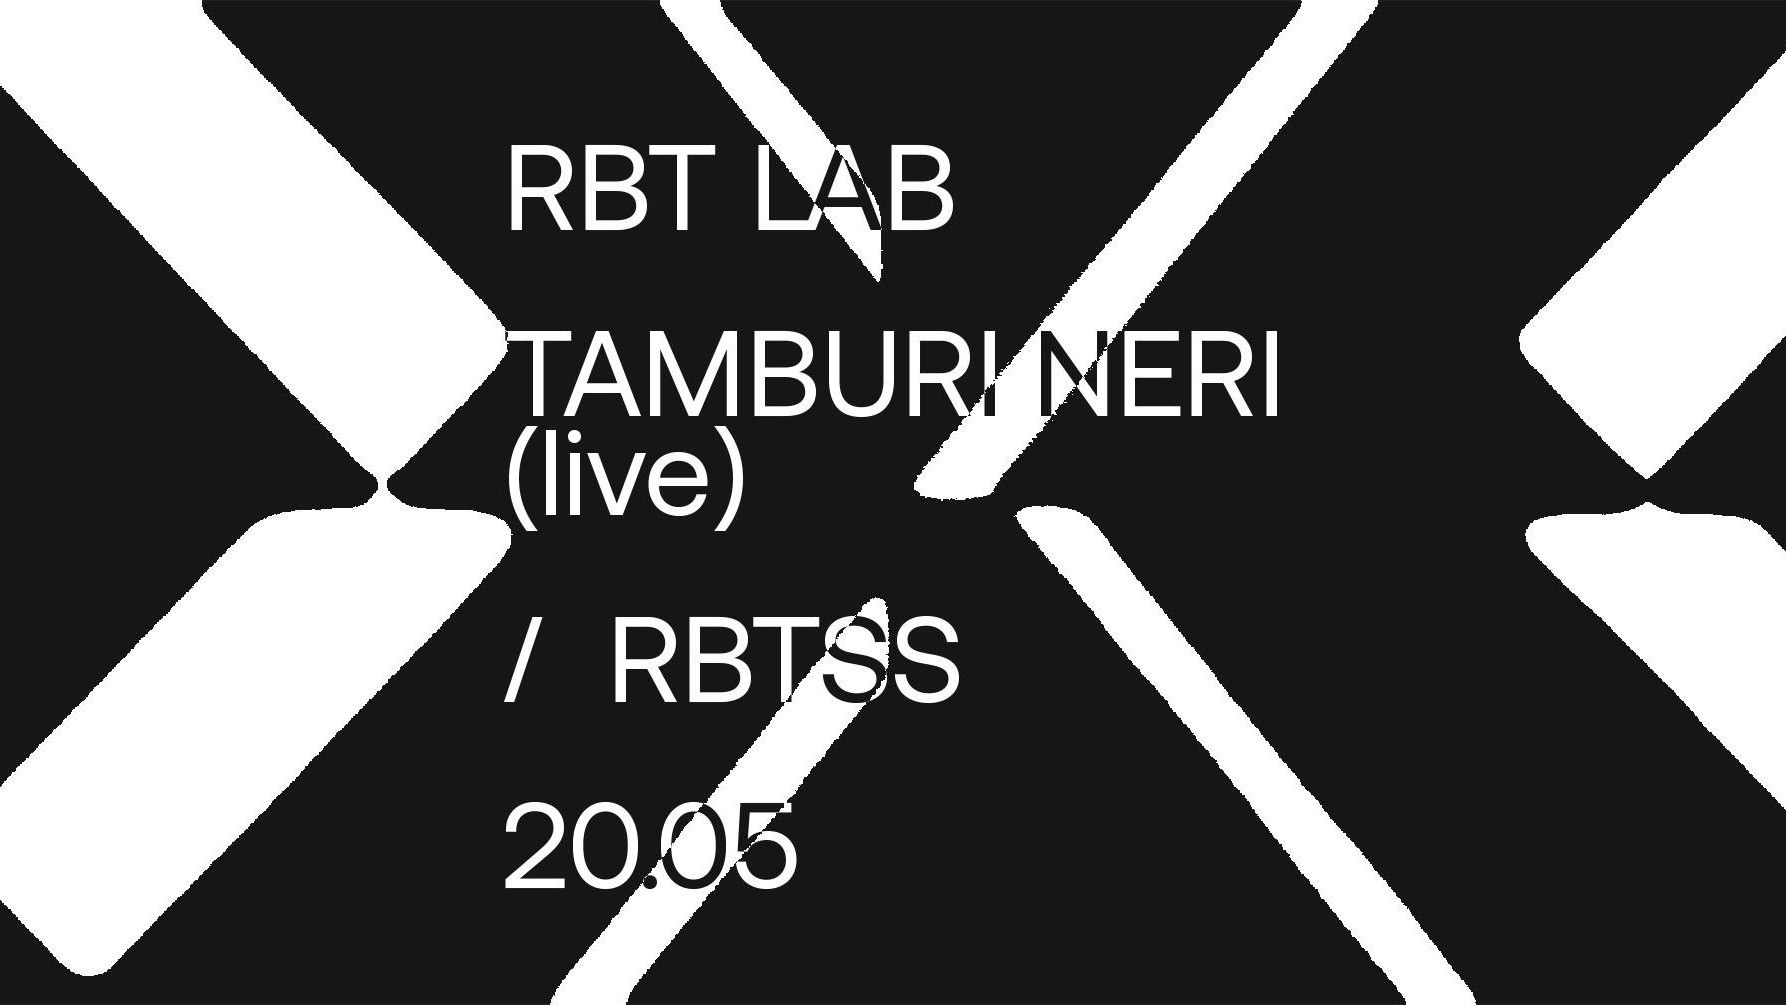 RBT LAB | Tamburi Neri (live) + RBT SS